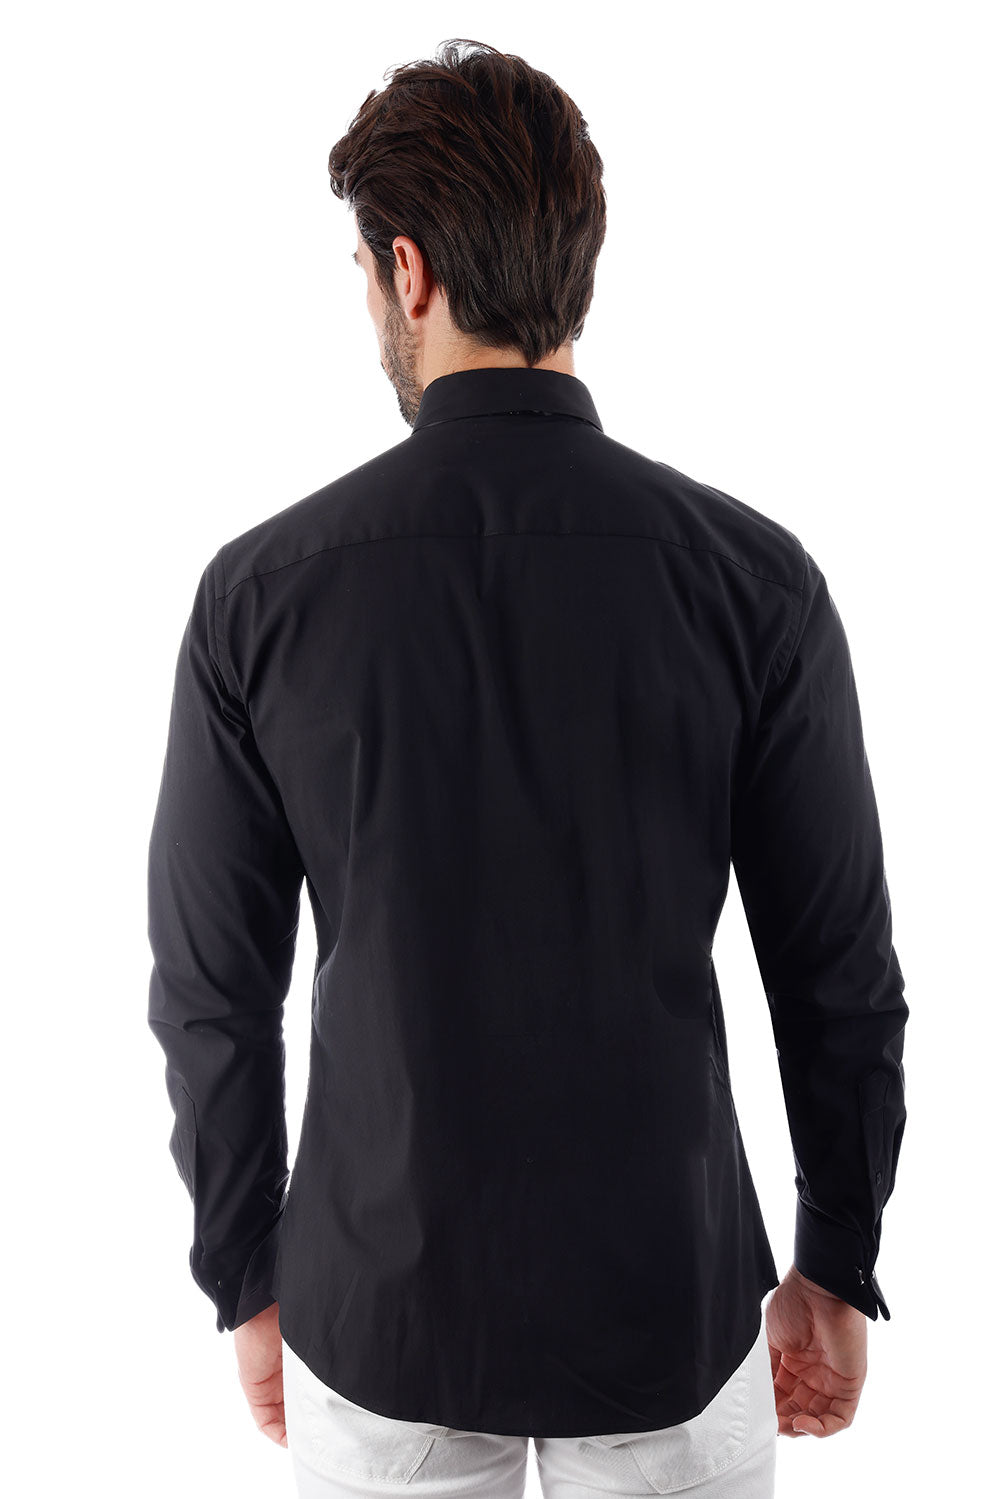 BARABAS Men's Tuxedo Wing Collar Button Down Long Sleeve Shirt 4txs03 Black